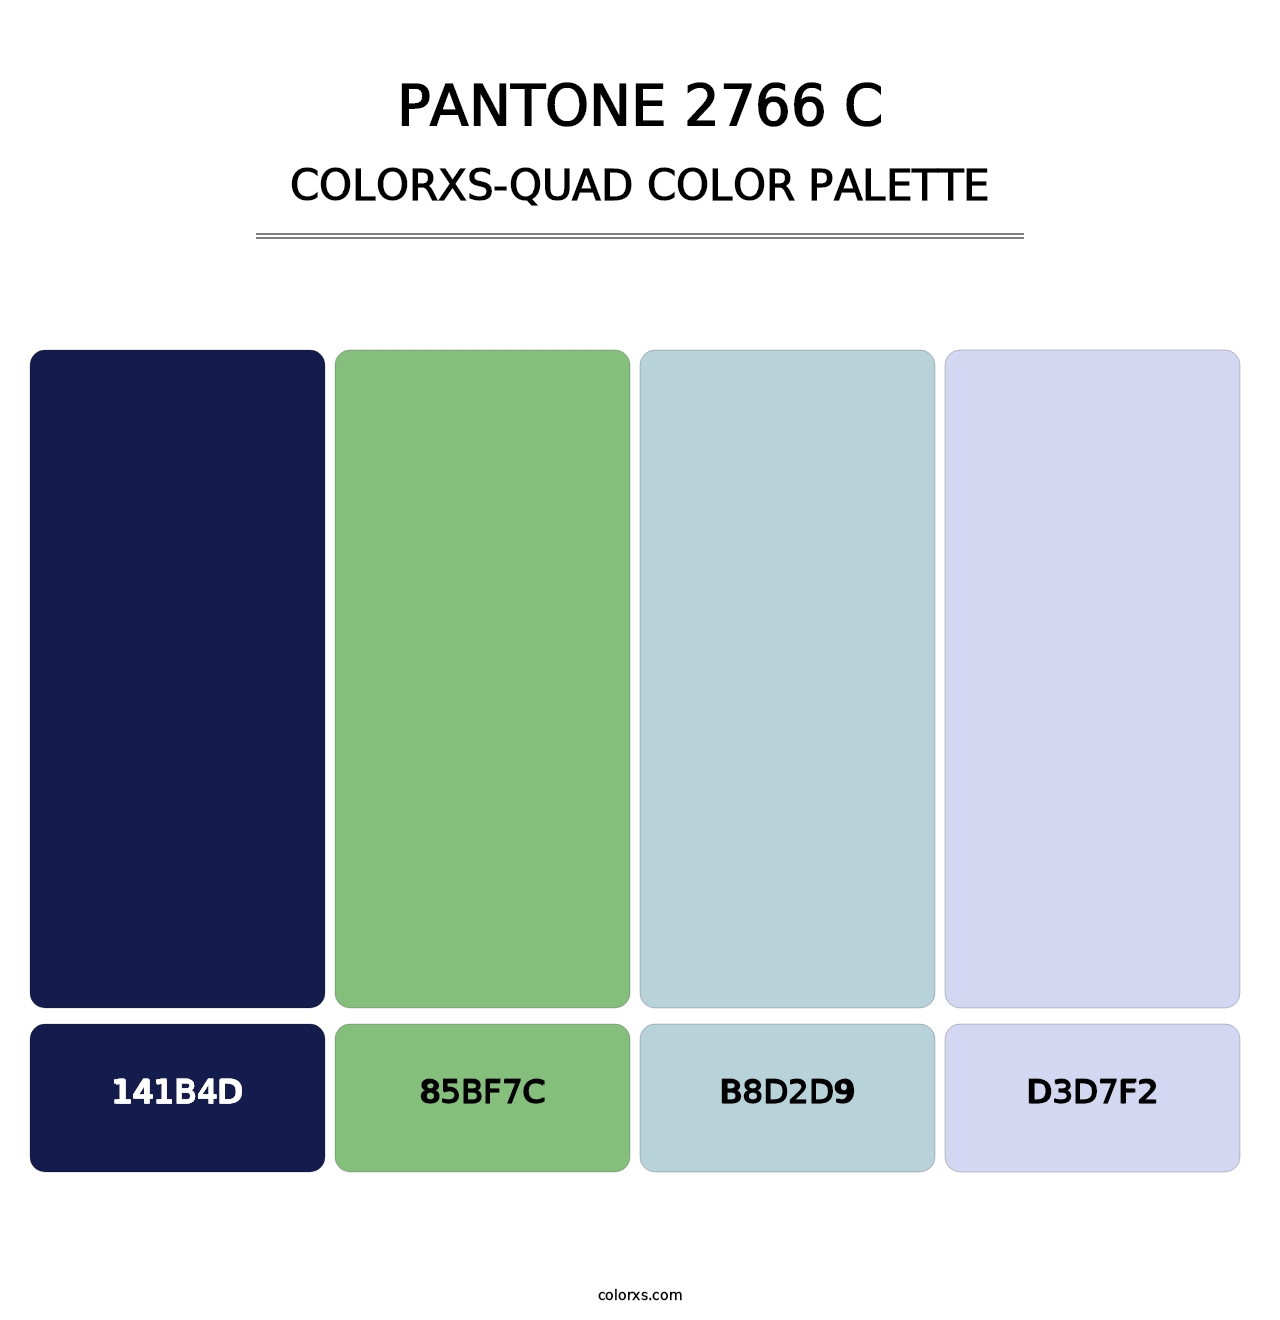 PANTONE 2766 C - Colorxs Quad Palette